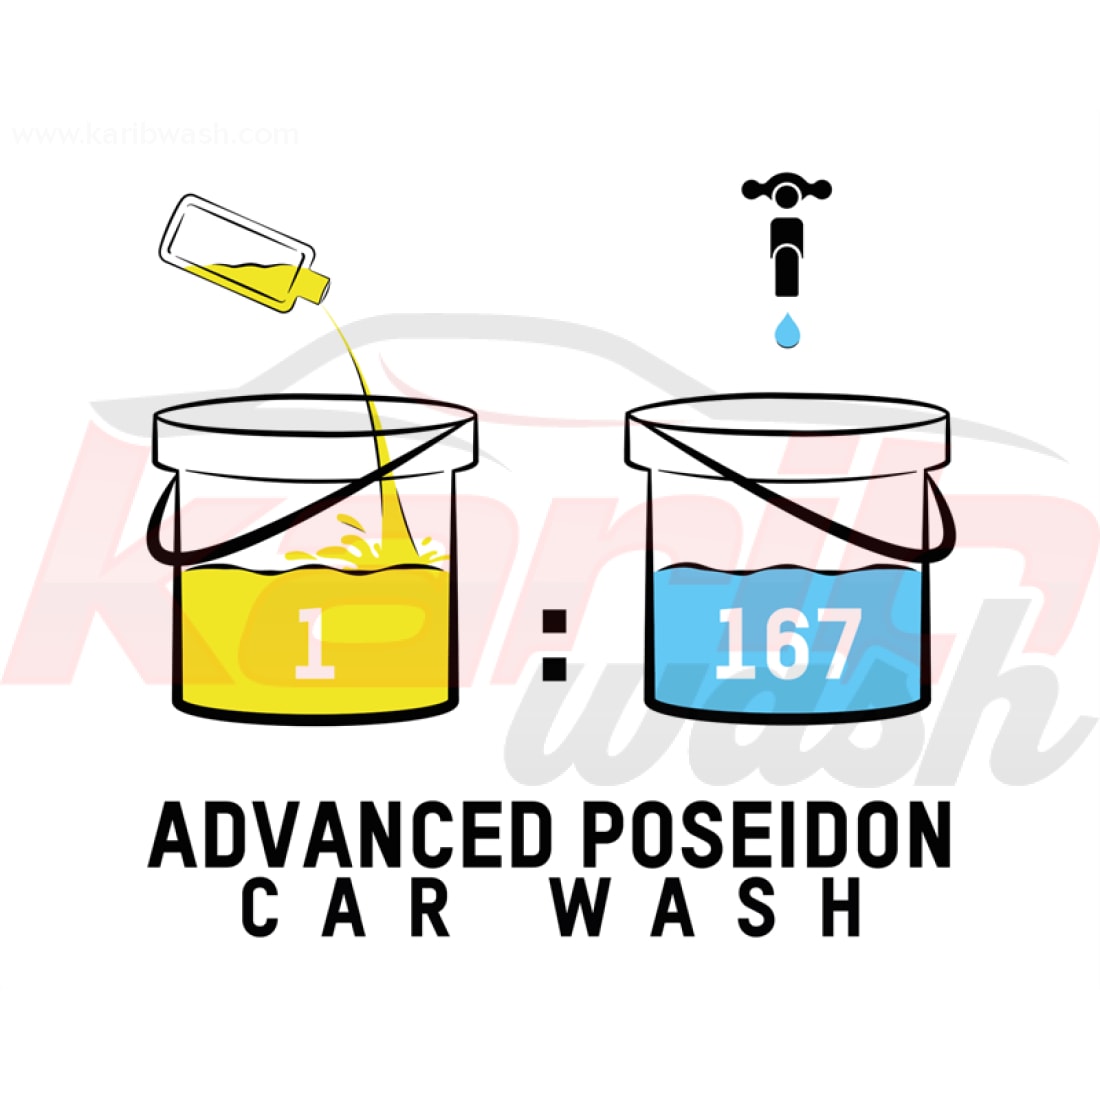 Advanced Poseidon Car Wash - VALET PRO - KARIBWASH